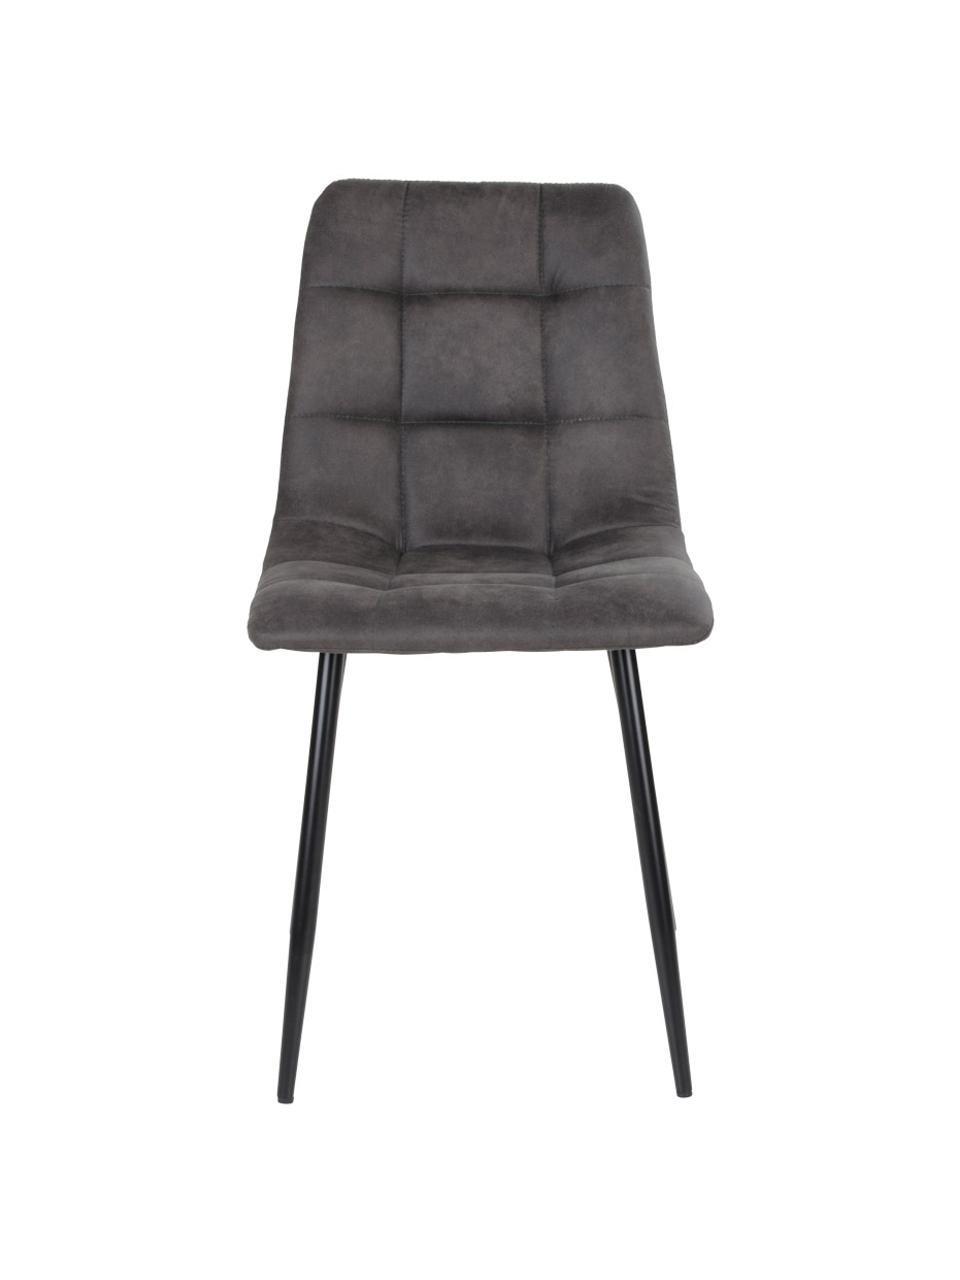 Krzesło tapicerowane Middleton, Tapicerka: mikrofibra Dzięki tkanini, Nogi: metal lakierowany, Szara tkanina, S 44 x G 55 cm